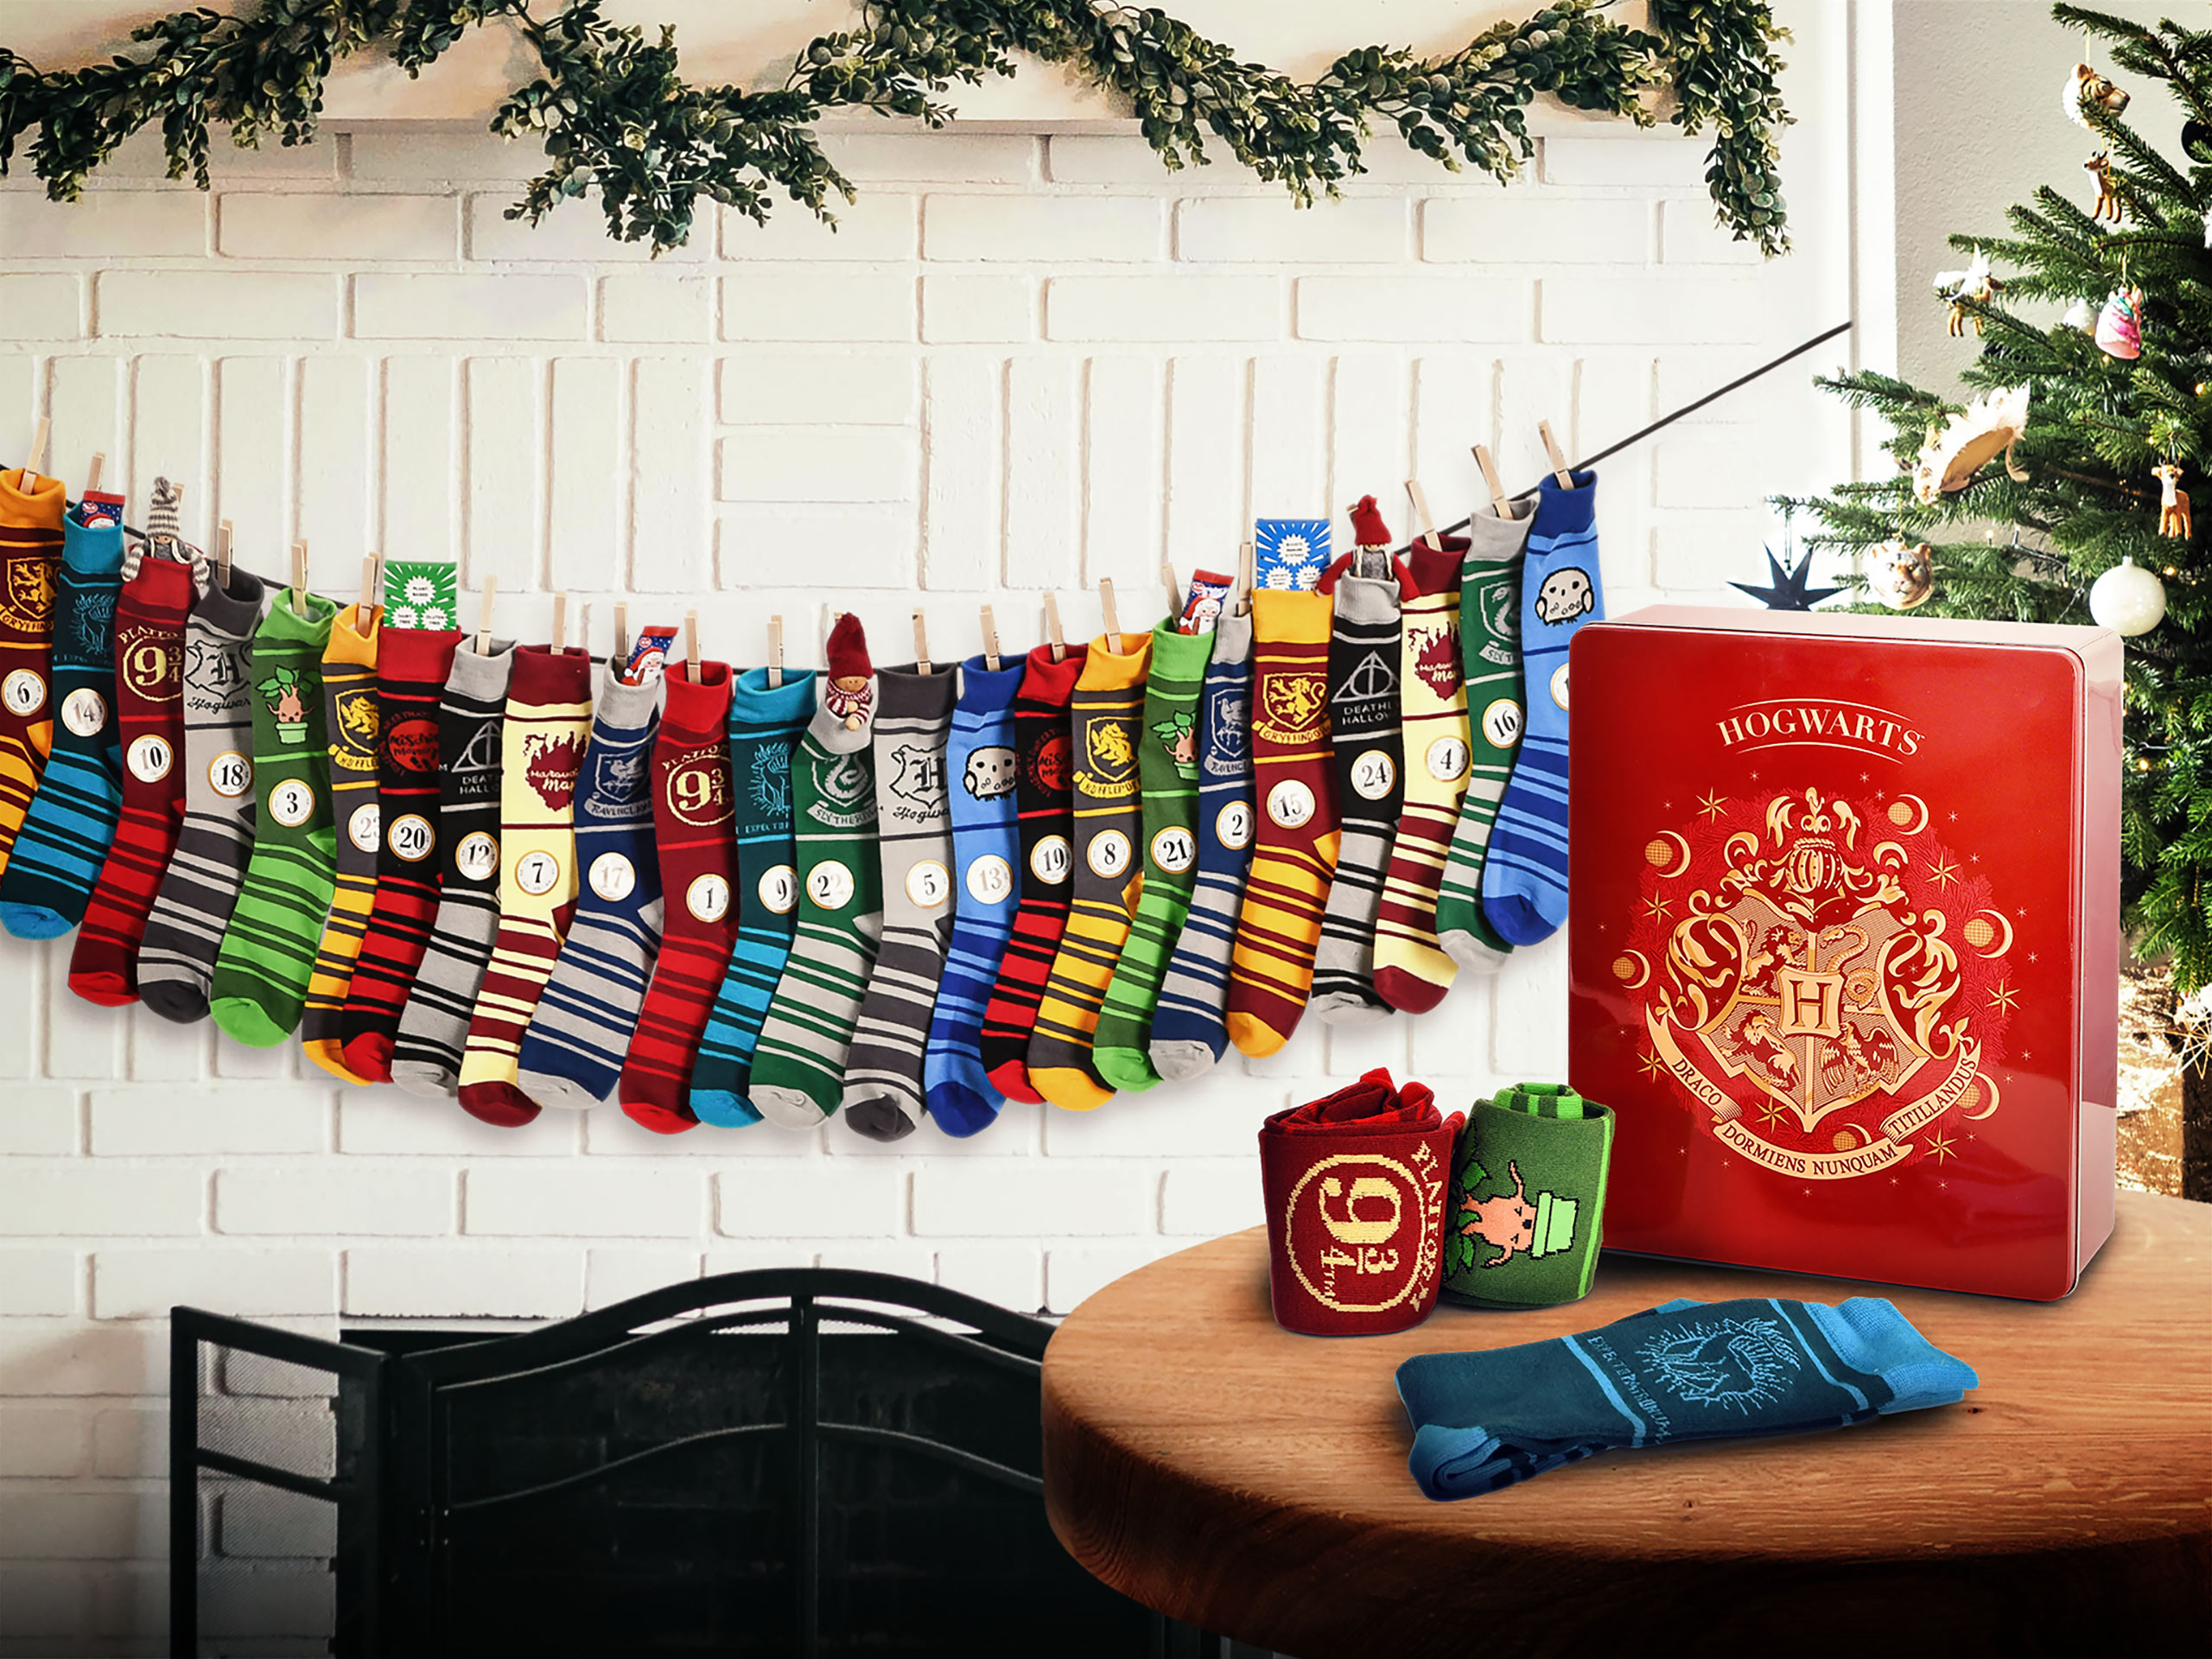 Harry Potter - socks Advent calendar to fill